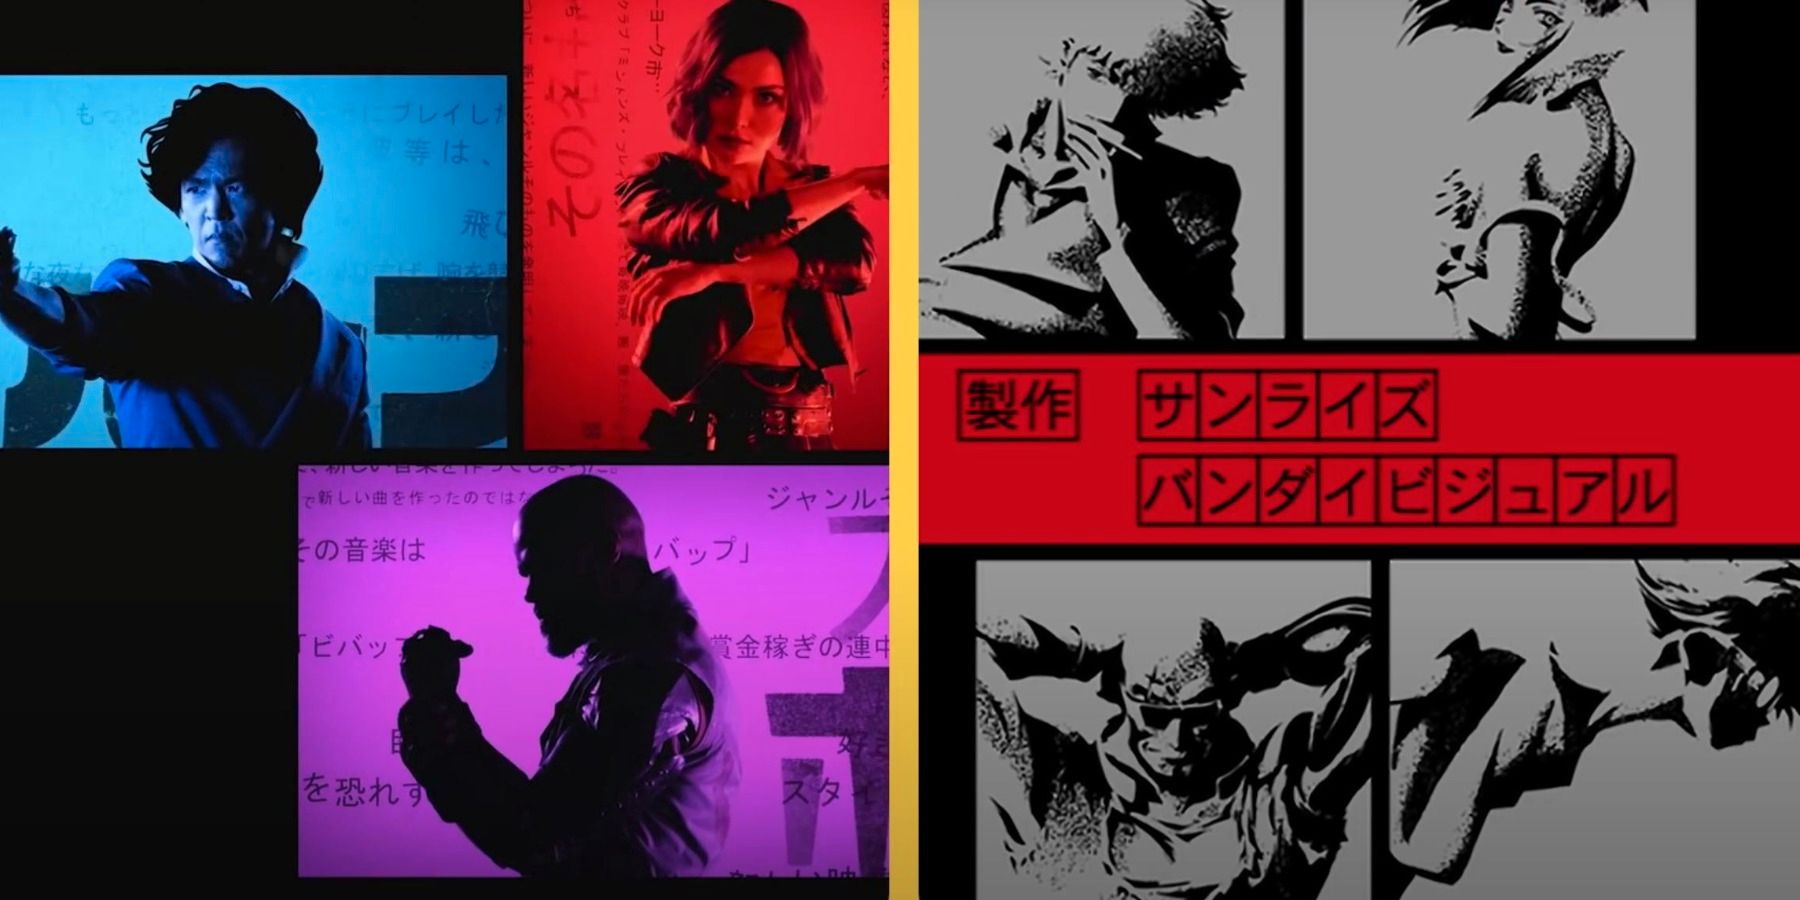 Cowboy Bebops Netflix-intro bliver side-by-side sammenligning med anime